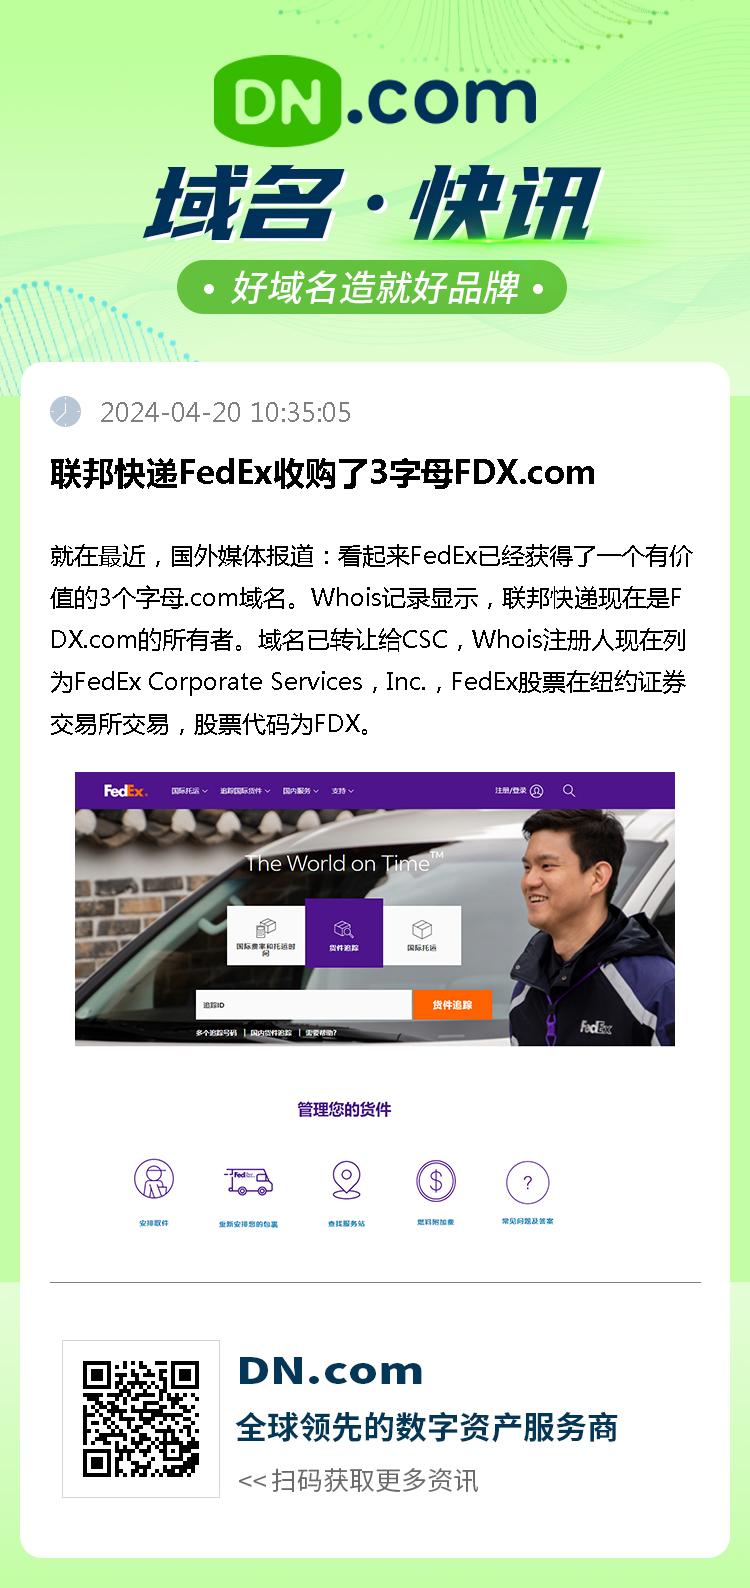 联邦快递FedEx收购了3字母FDX.com